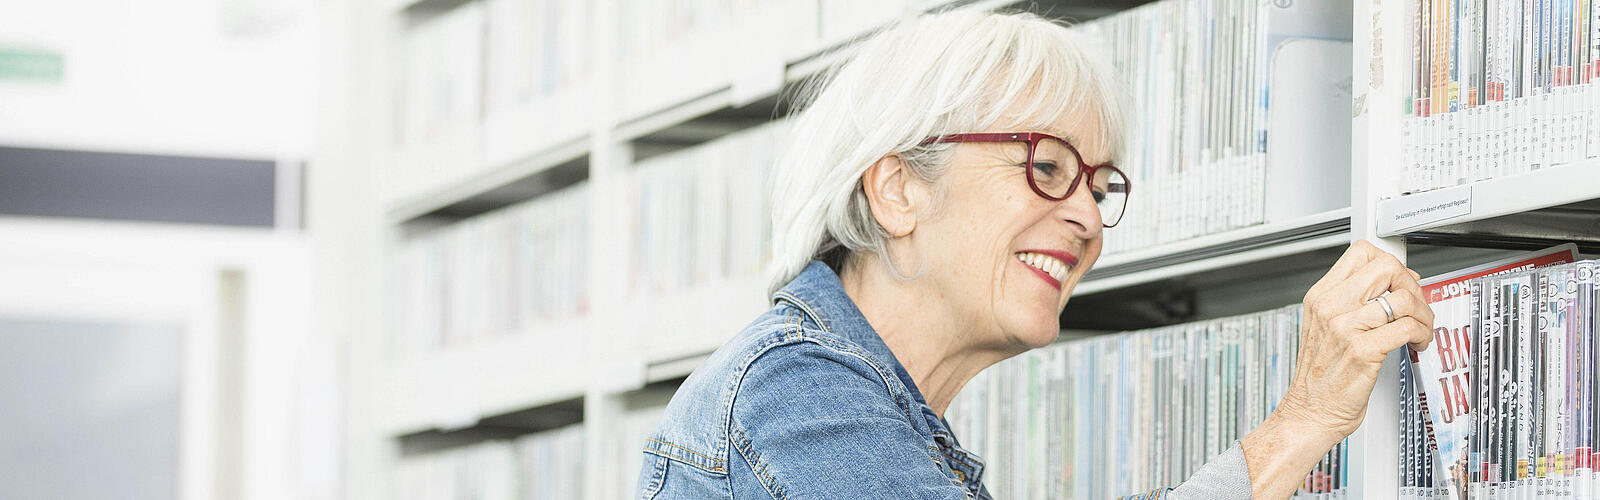 Ältere Frau zieht lächelnd DVD aus Regal in Bibliothek